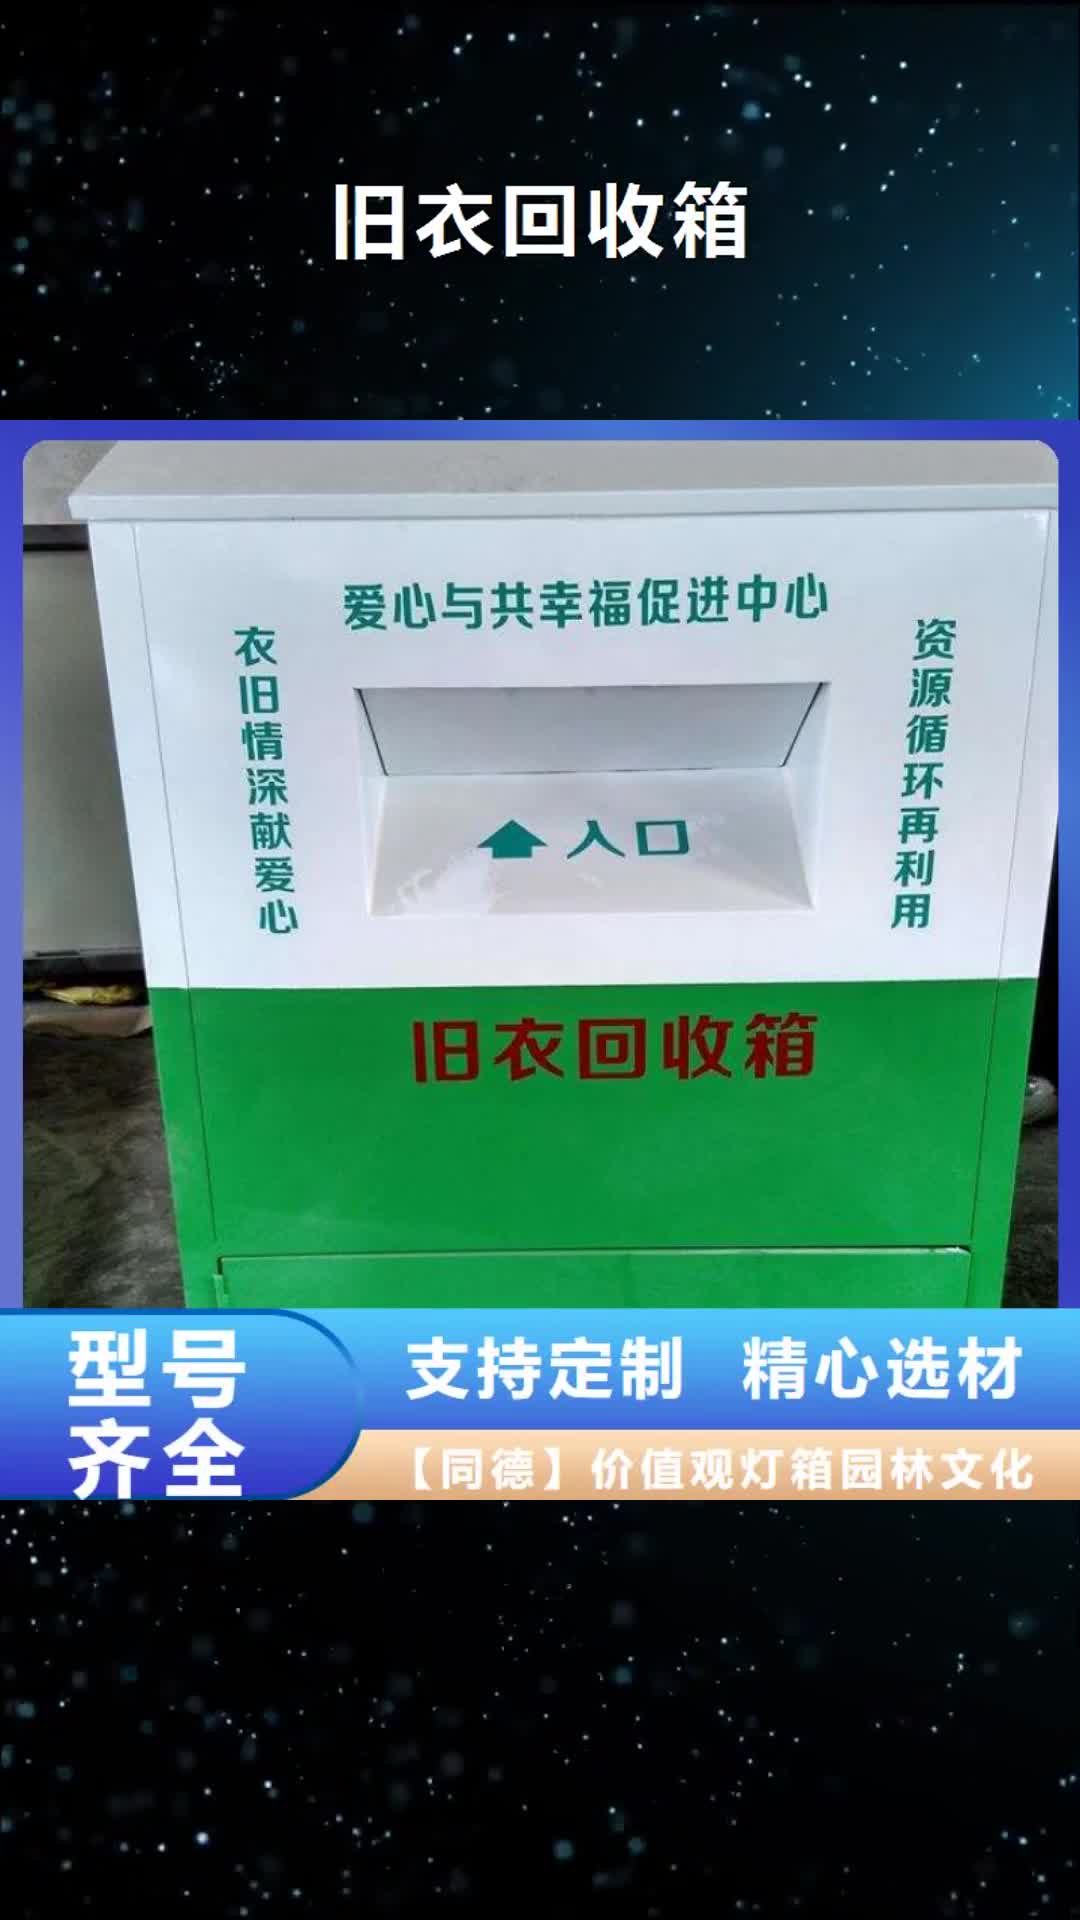 【香港 旧衣回收箱,公共卫生间快捷物流】